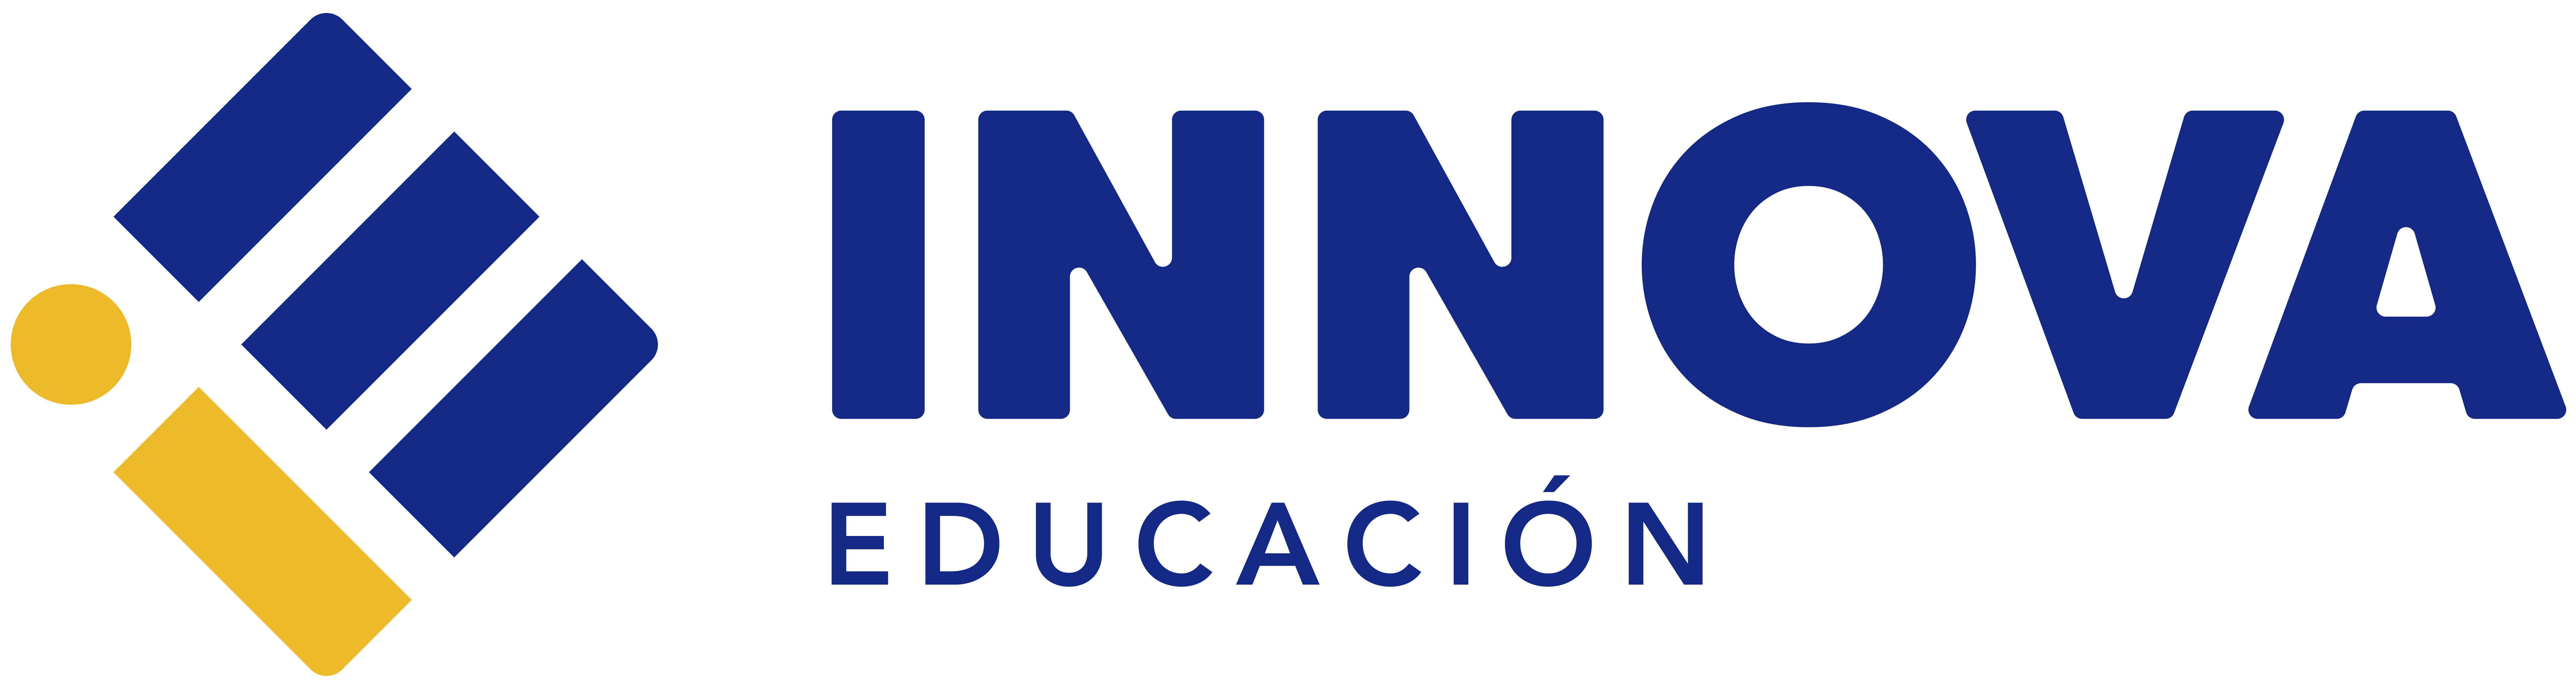 Logo de INNOVA EDUCACIóN